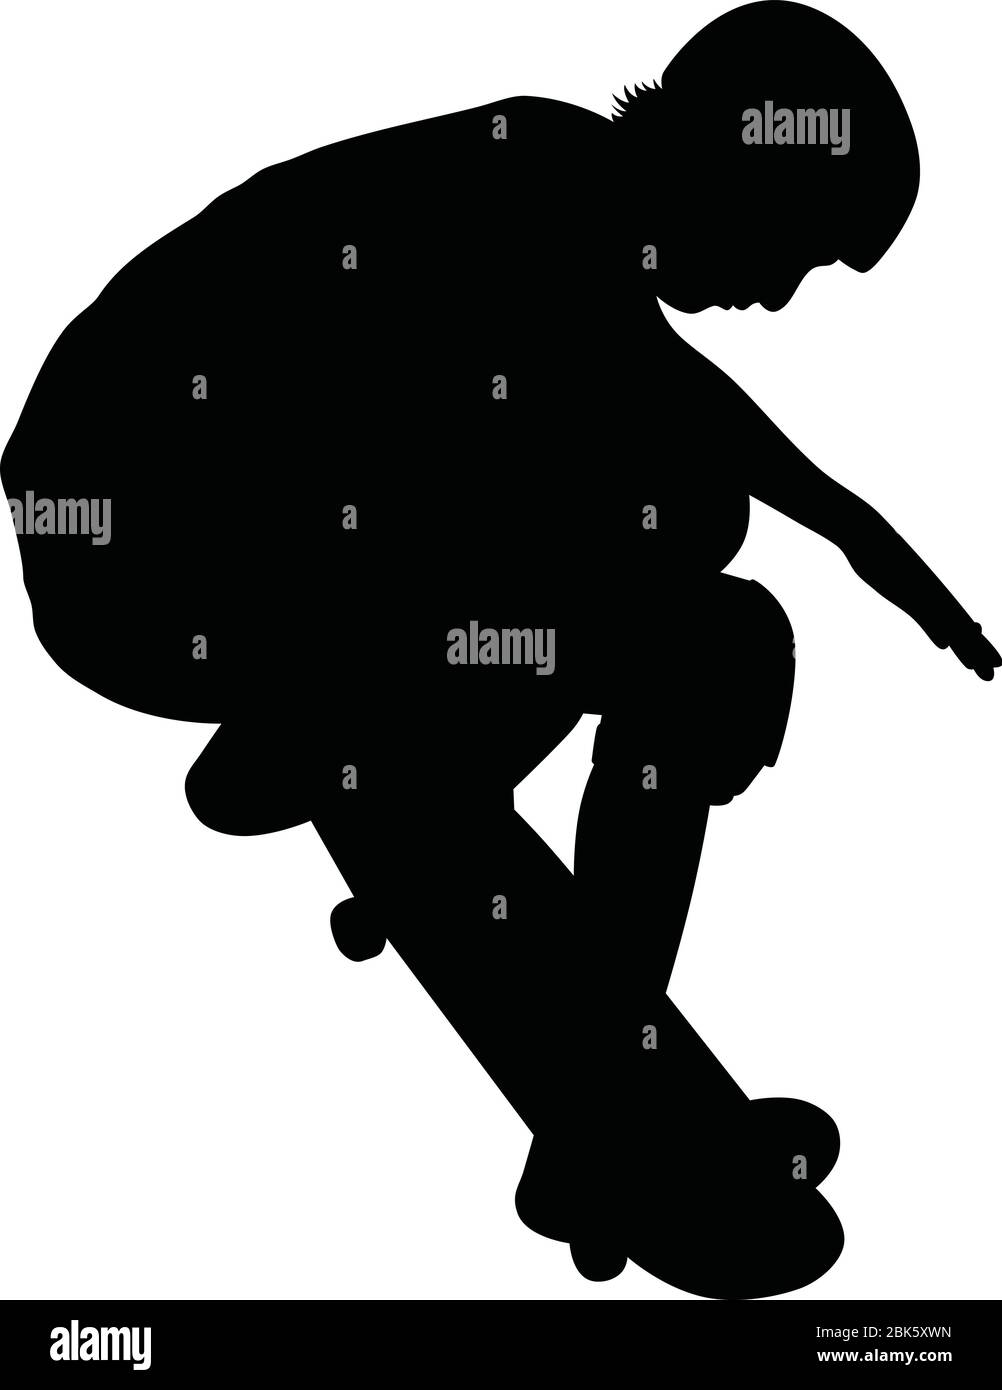 Vektor-Illustration von Skater Springen auf Skateboard auf extreme Skateboarding Sport Wettbewerb, Silhouette von jungen männlichen Skateboarder Freestyle Skatin Stock Vektor